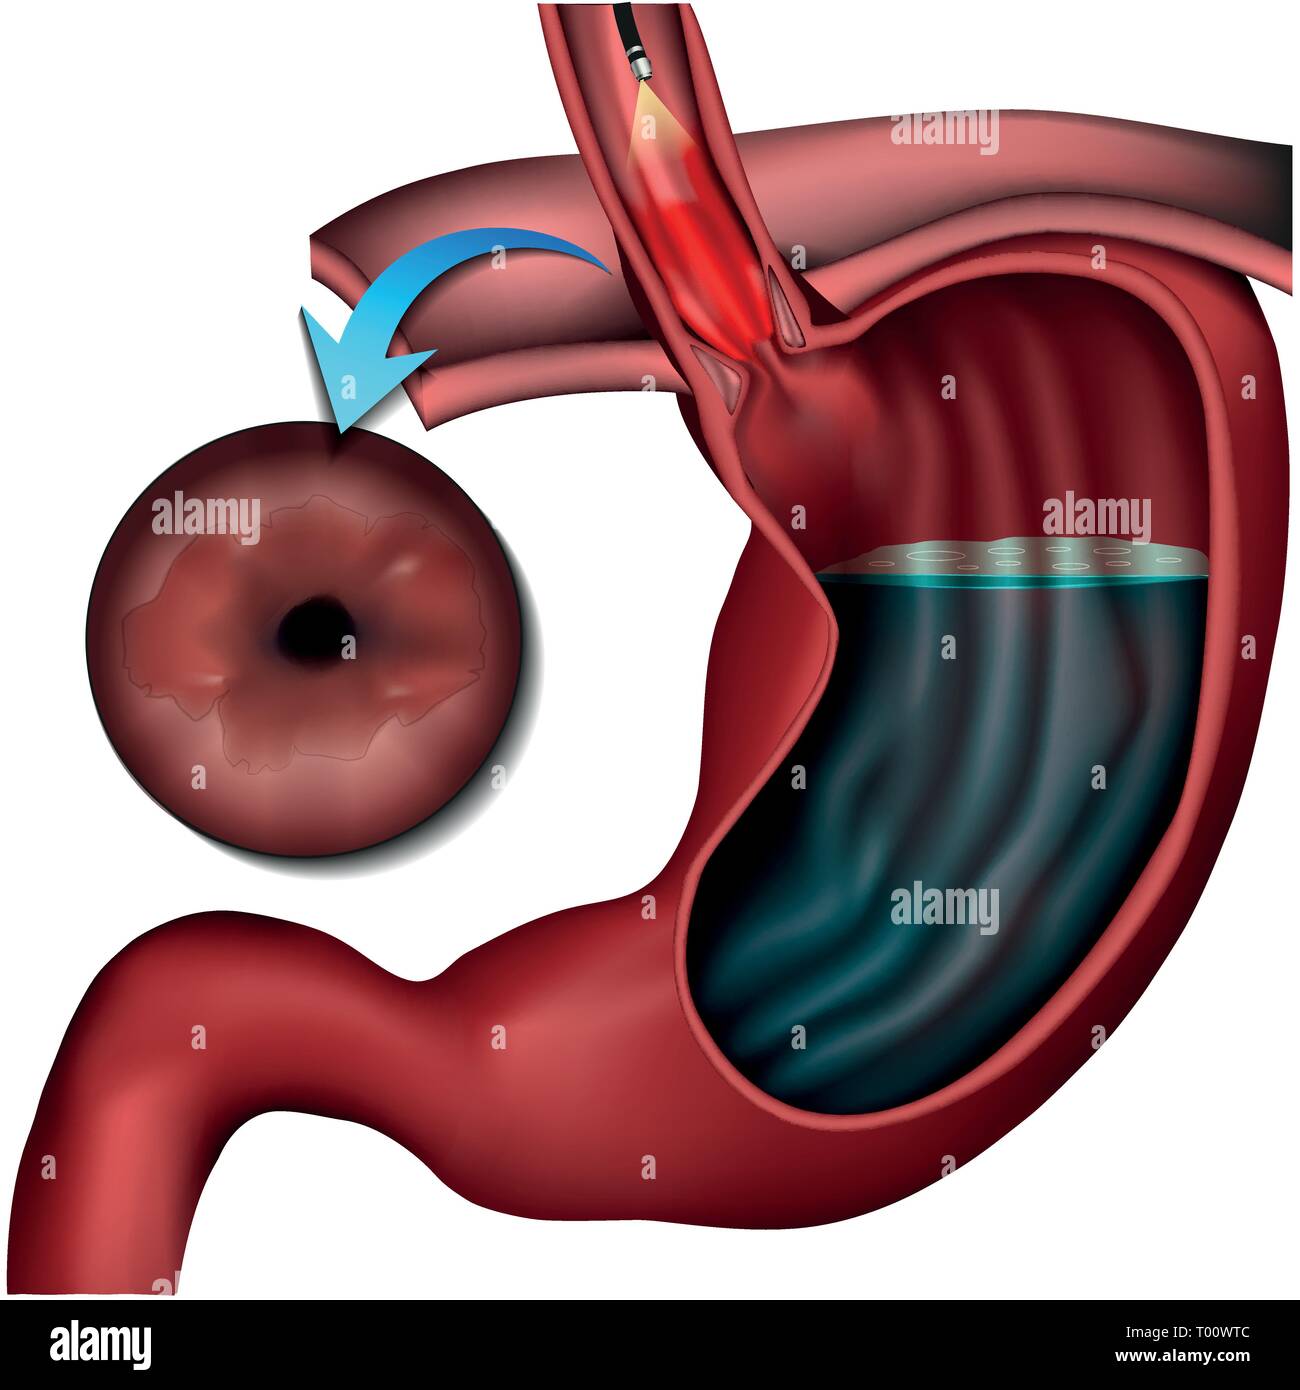 Barett esophagus disease medical vector illustration on white background Stock Vector